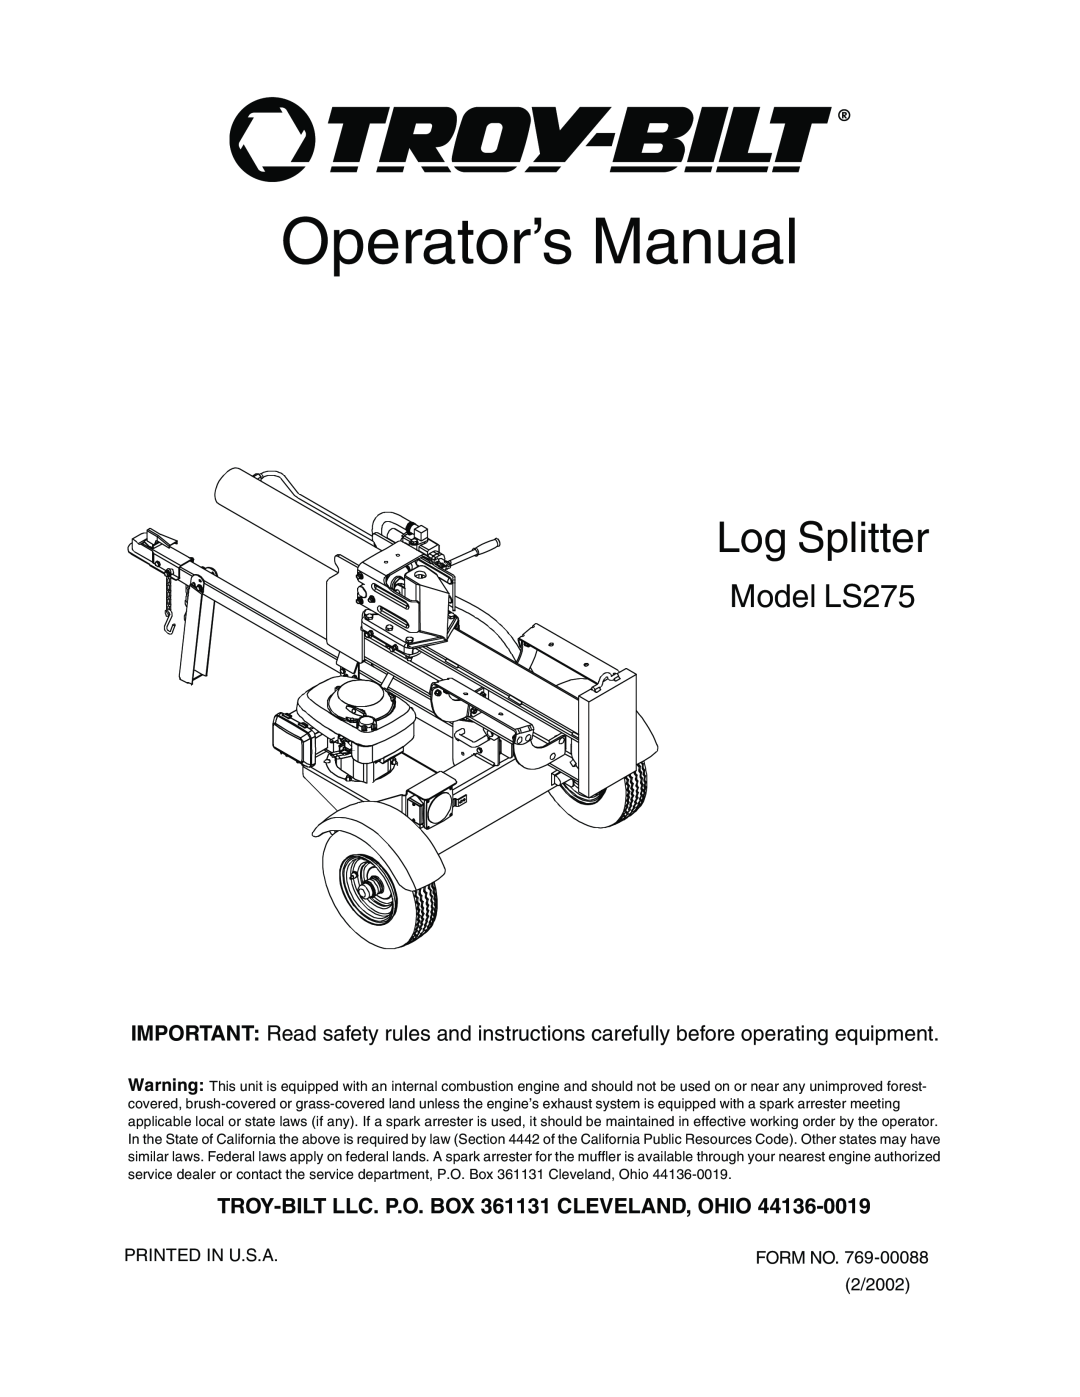 Troy-Bilt manual Model LS275, TROY-BILT LLC. P.O. BOX 361131 CLEVELAND, OHIO, Operator’s Manual, Log Splitter 